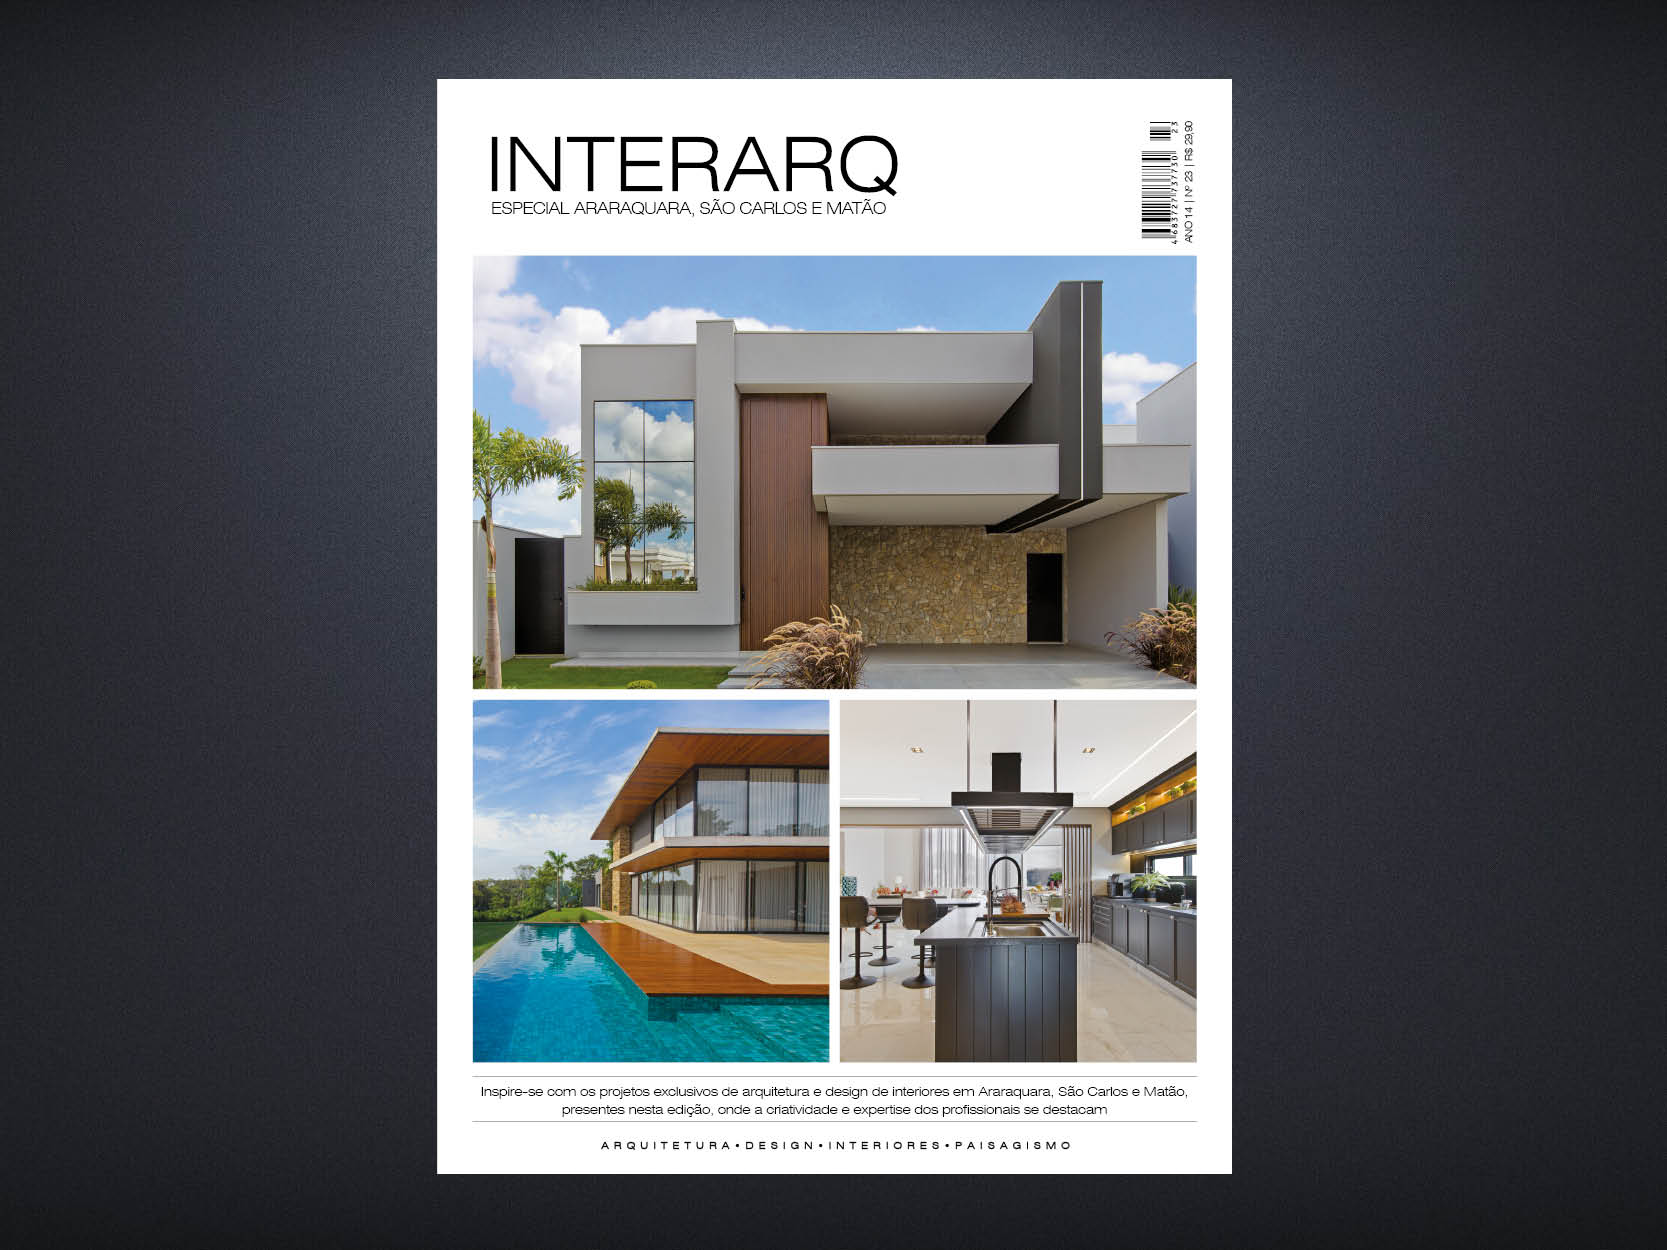 INTERARQ ESPECIAL ARARAQUARA, SÃO CARLOS E MATÃO – ED 23 - Revista InterArq | Arquitetura, Decoração, Design, Paisagismo e Lifestyle